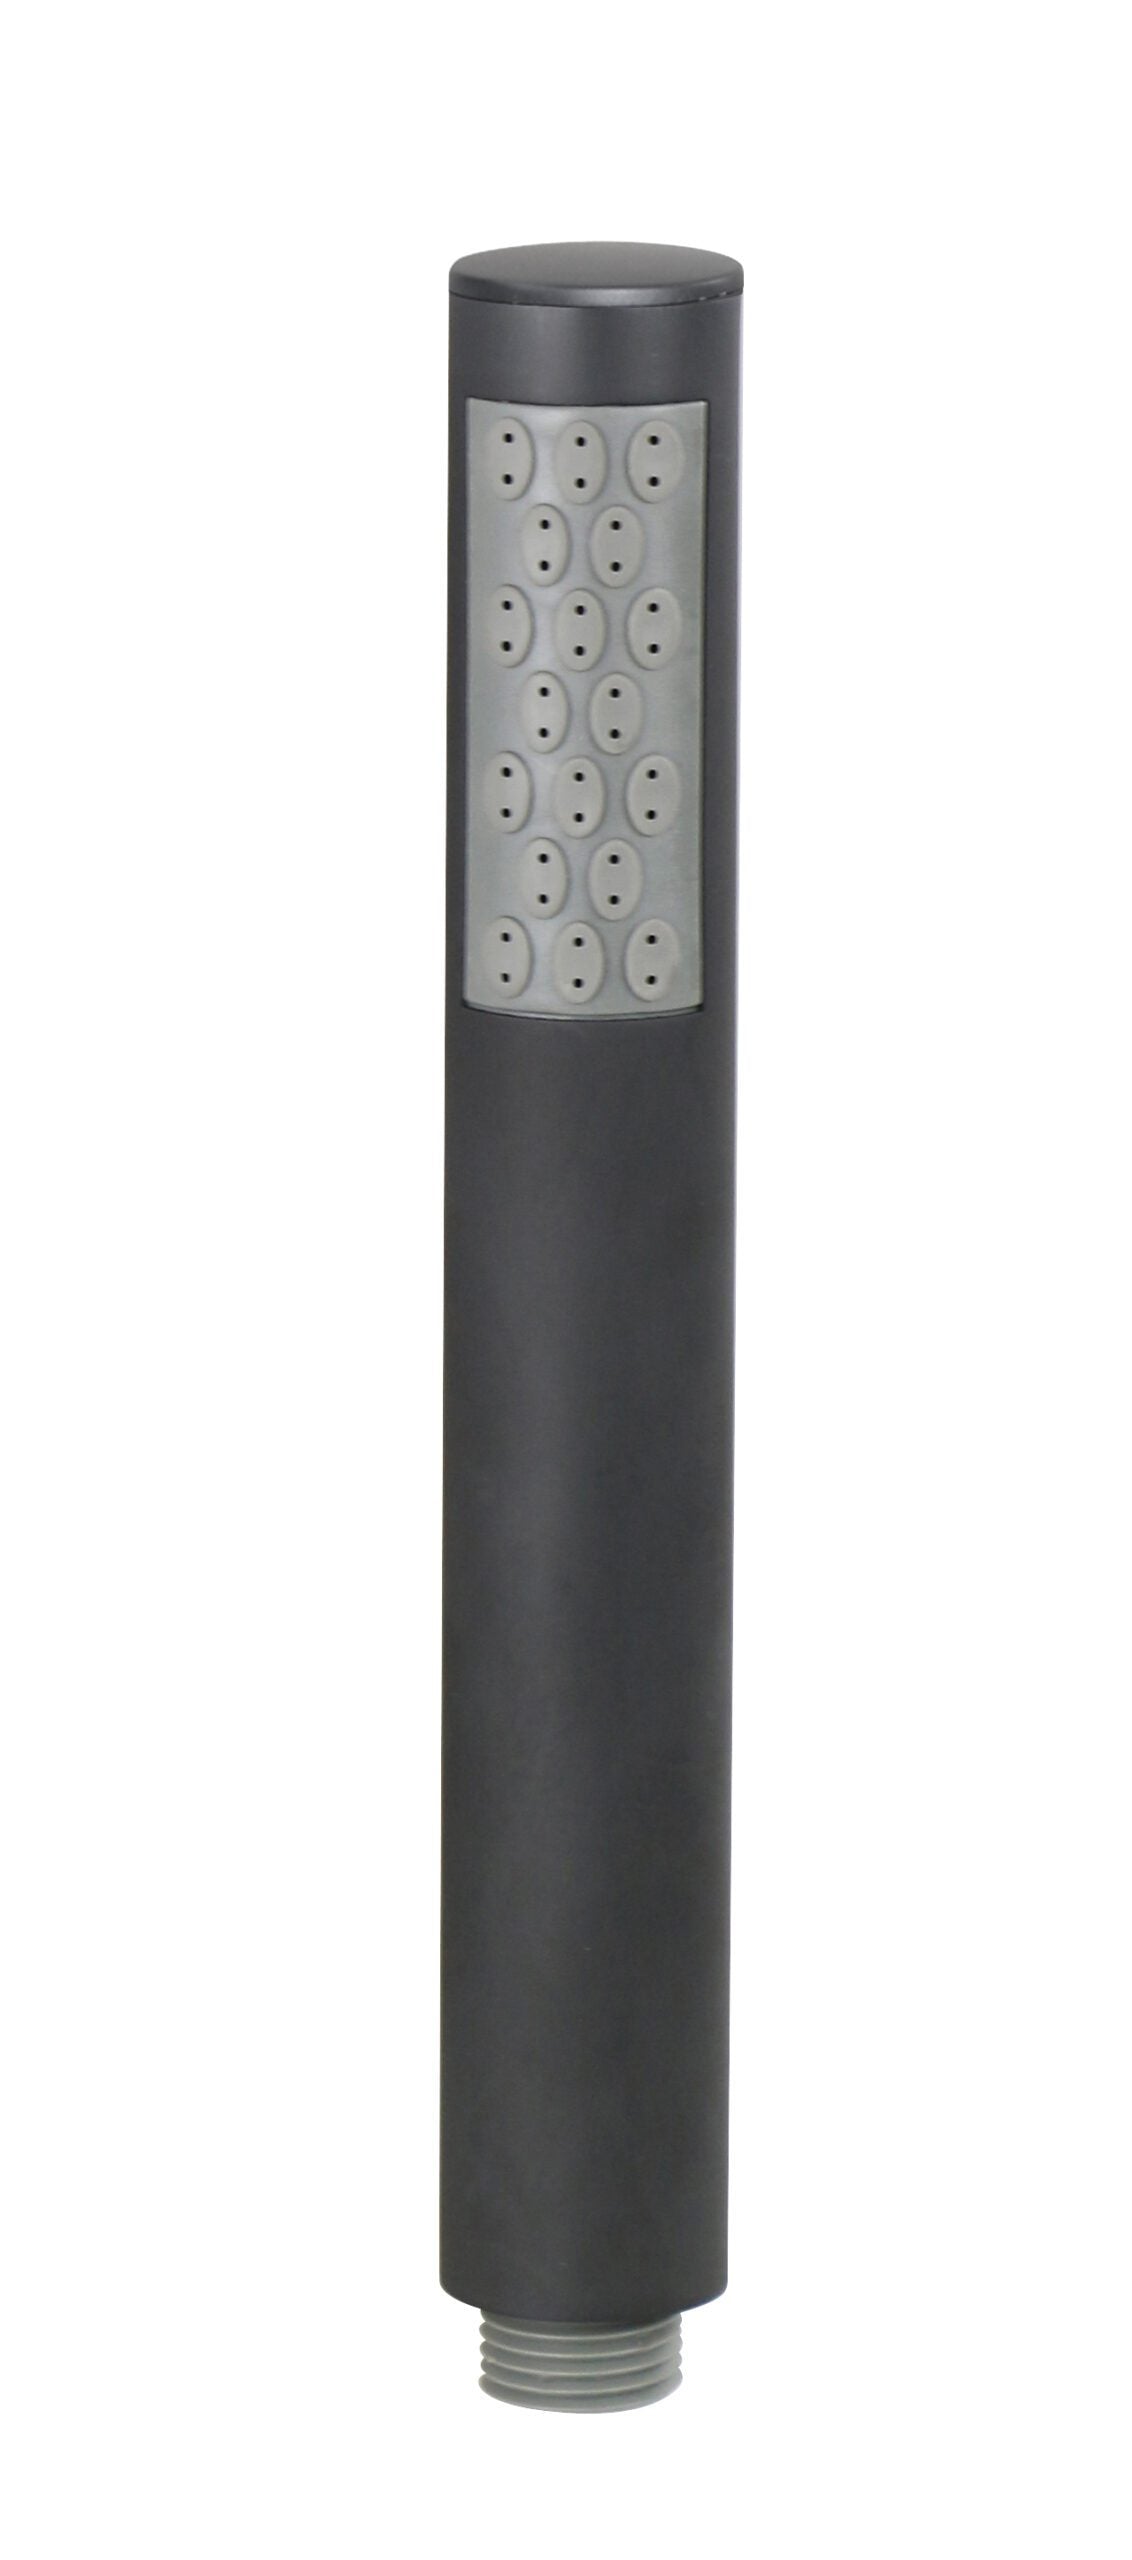 Doccia tonda in ABS NERO OPACO, a getto fisso, diametro 28mm - BagnoPro